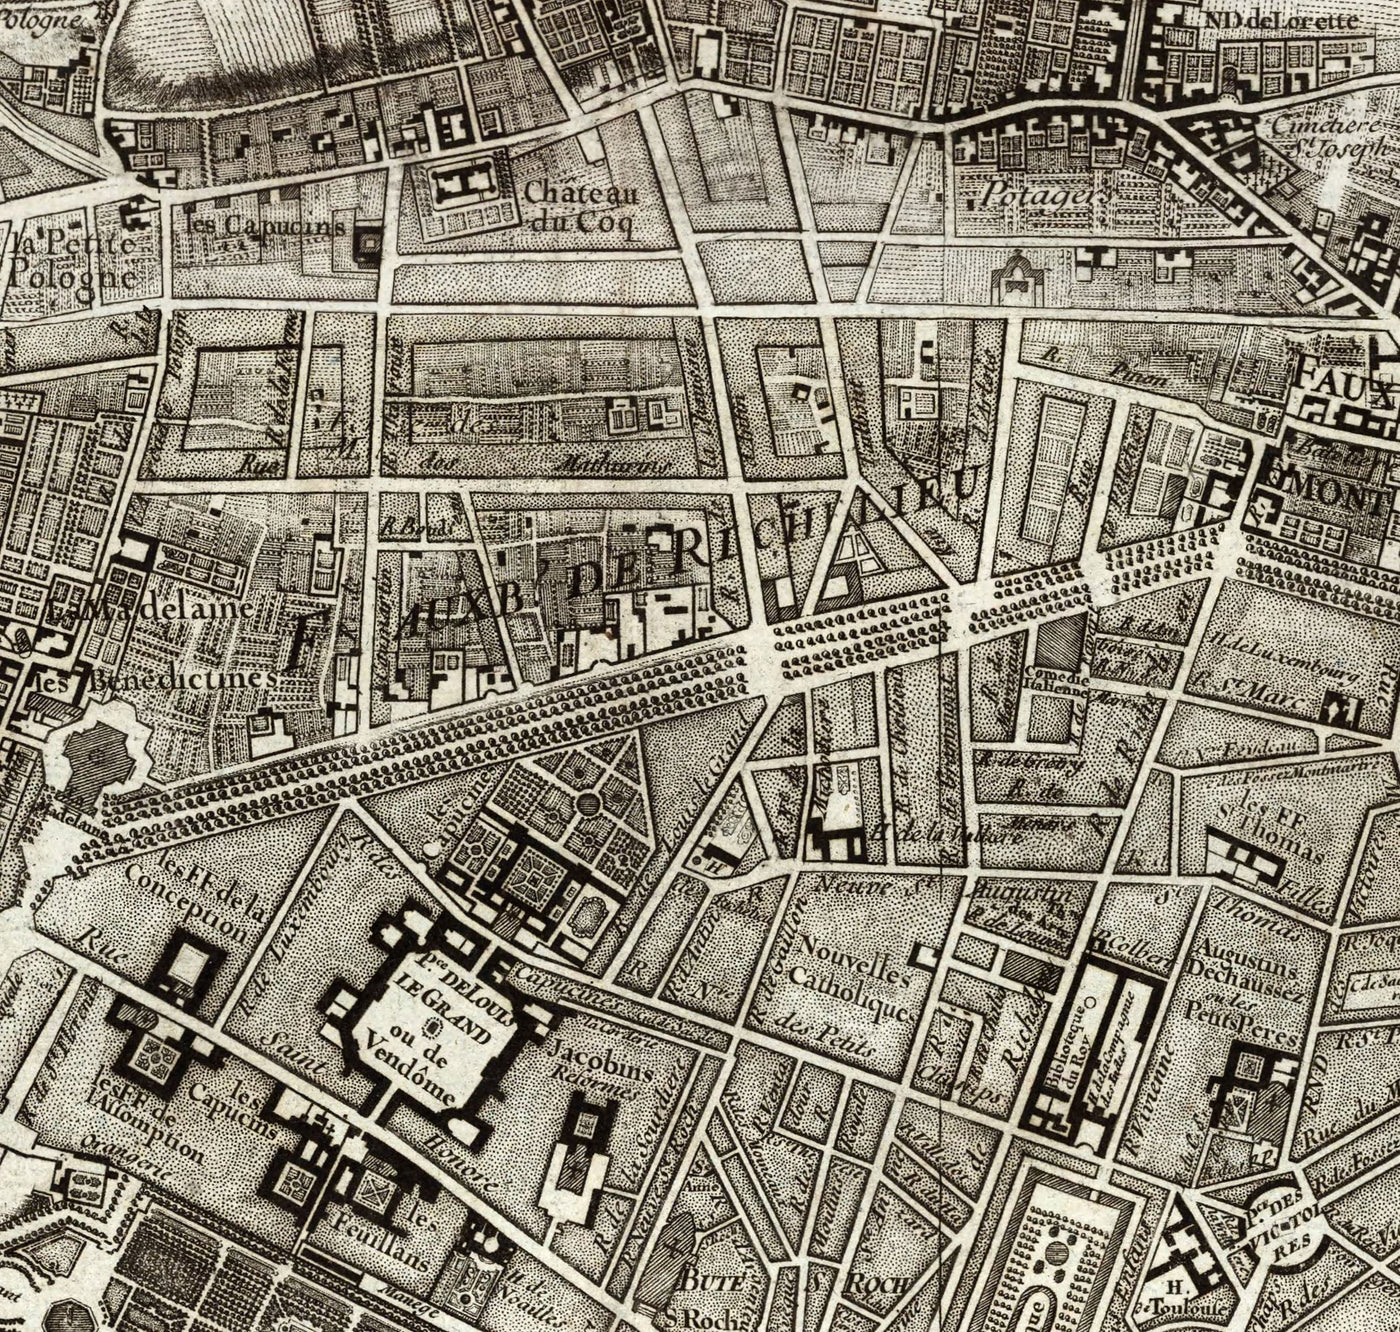 Viejo mapa raro de París, 1795 por Roussel - Louvre del siglo XVIII, Les Invalides, Champs-Ilysées